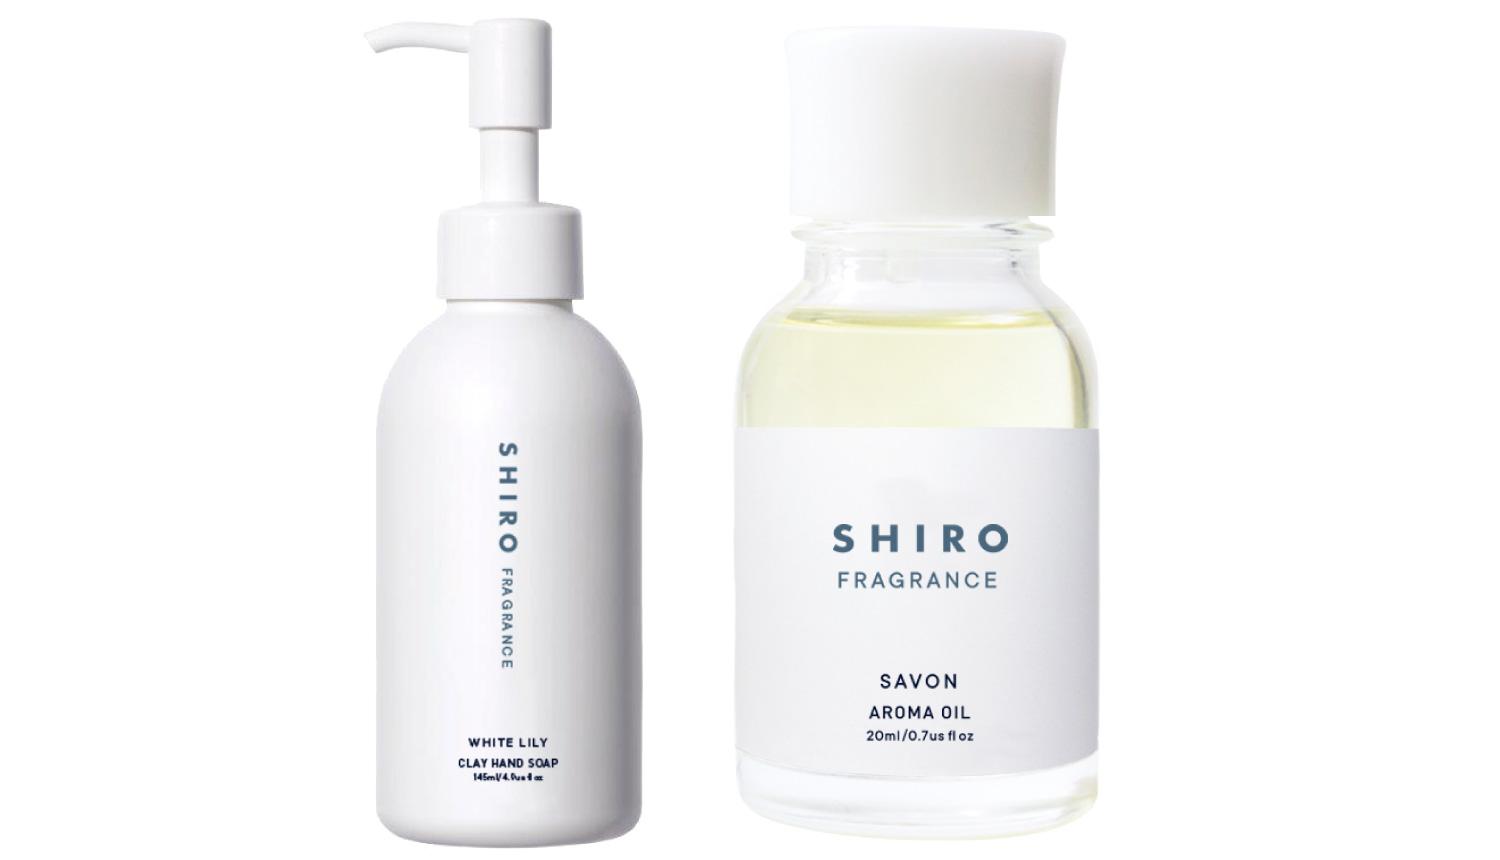 シロフレイグランス-SHIRO-Fragrance-香味1